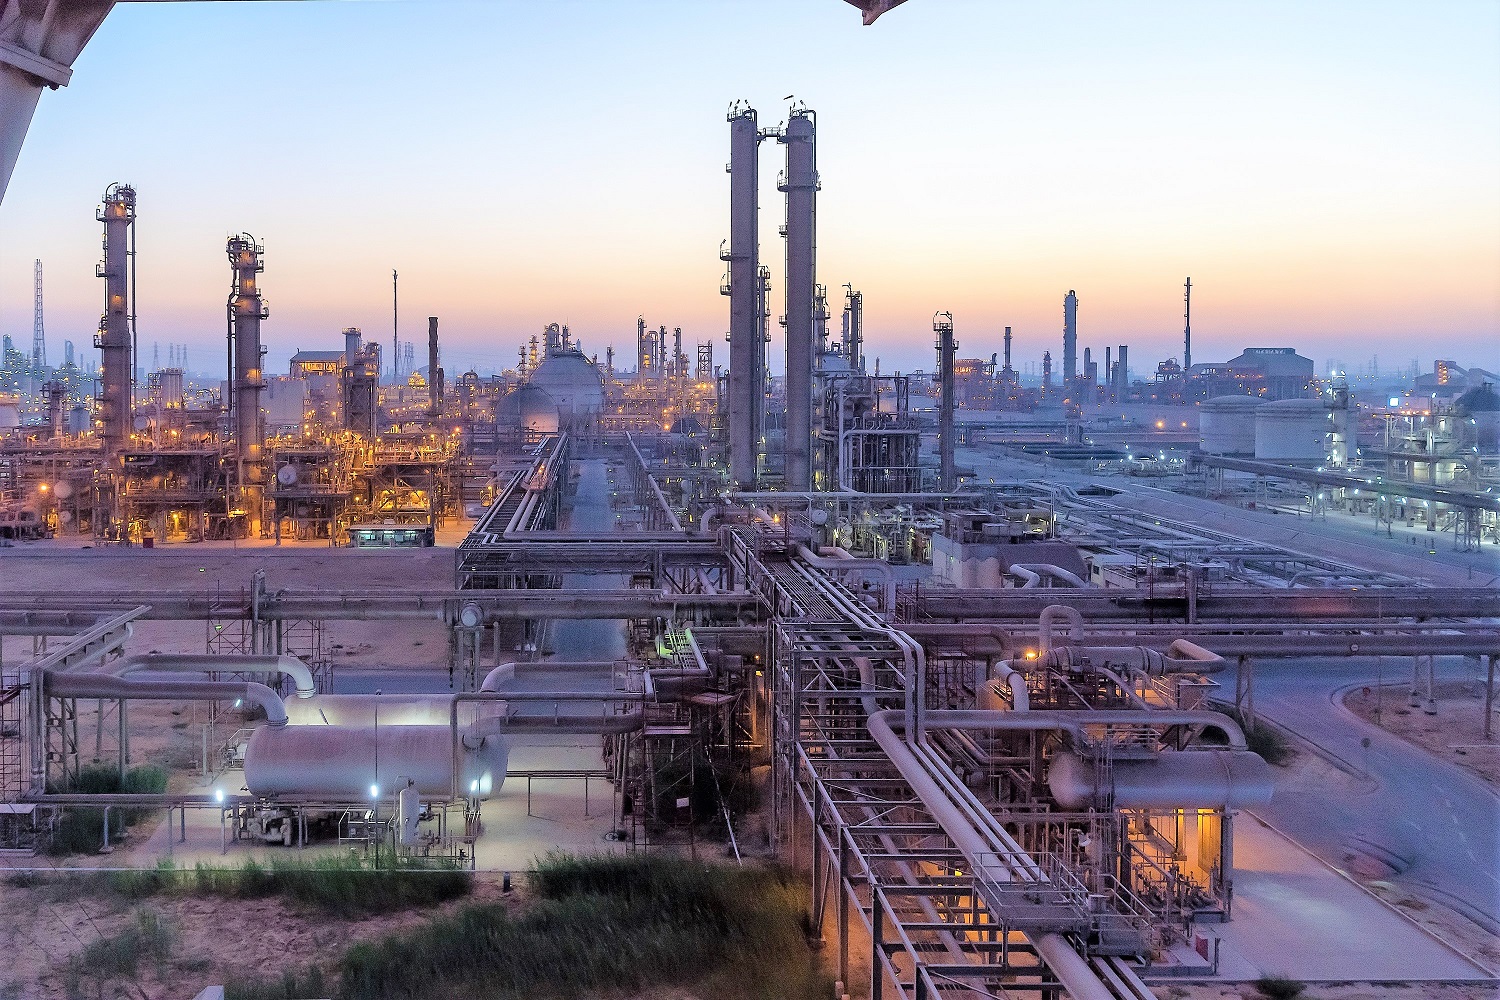 Саудовская аравия производство. Саудовская Аравия нефтехимический завод. Химический завод Саудовской Аравии. НПЗ Саудовской Аравии. Химическая промышленность Саудовская Аравия.